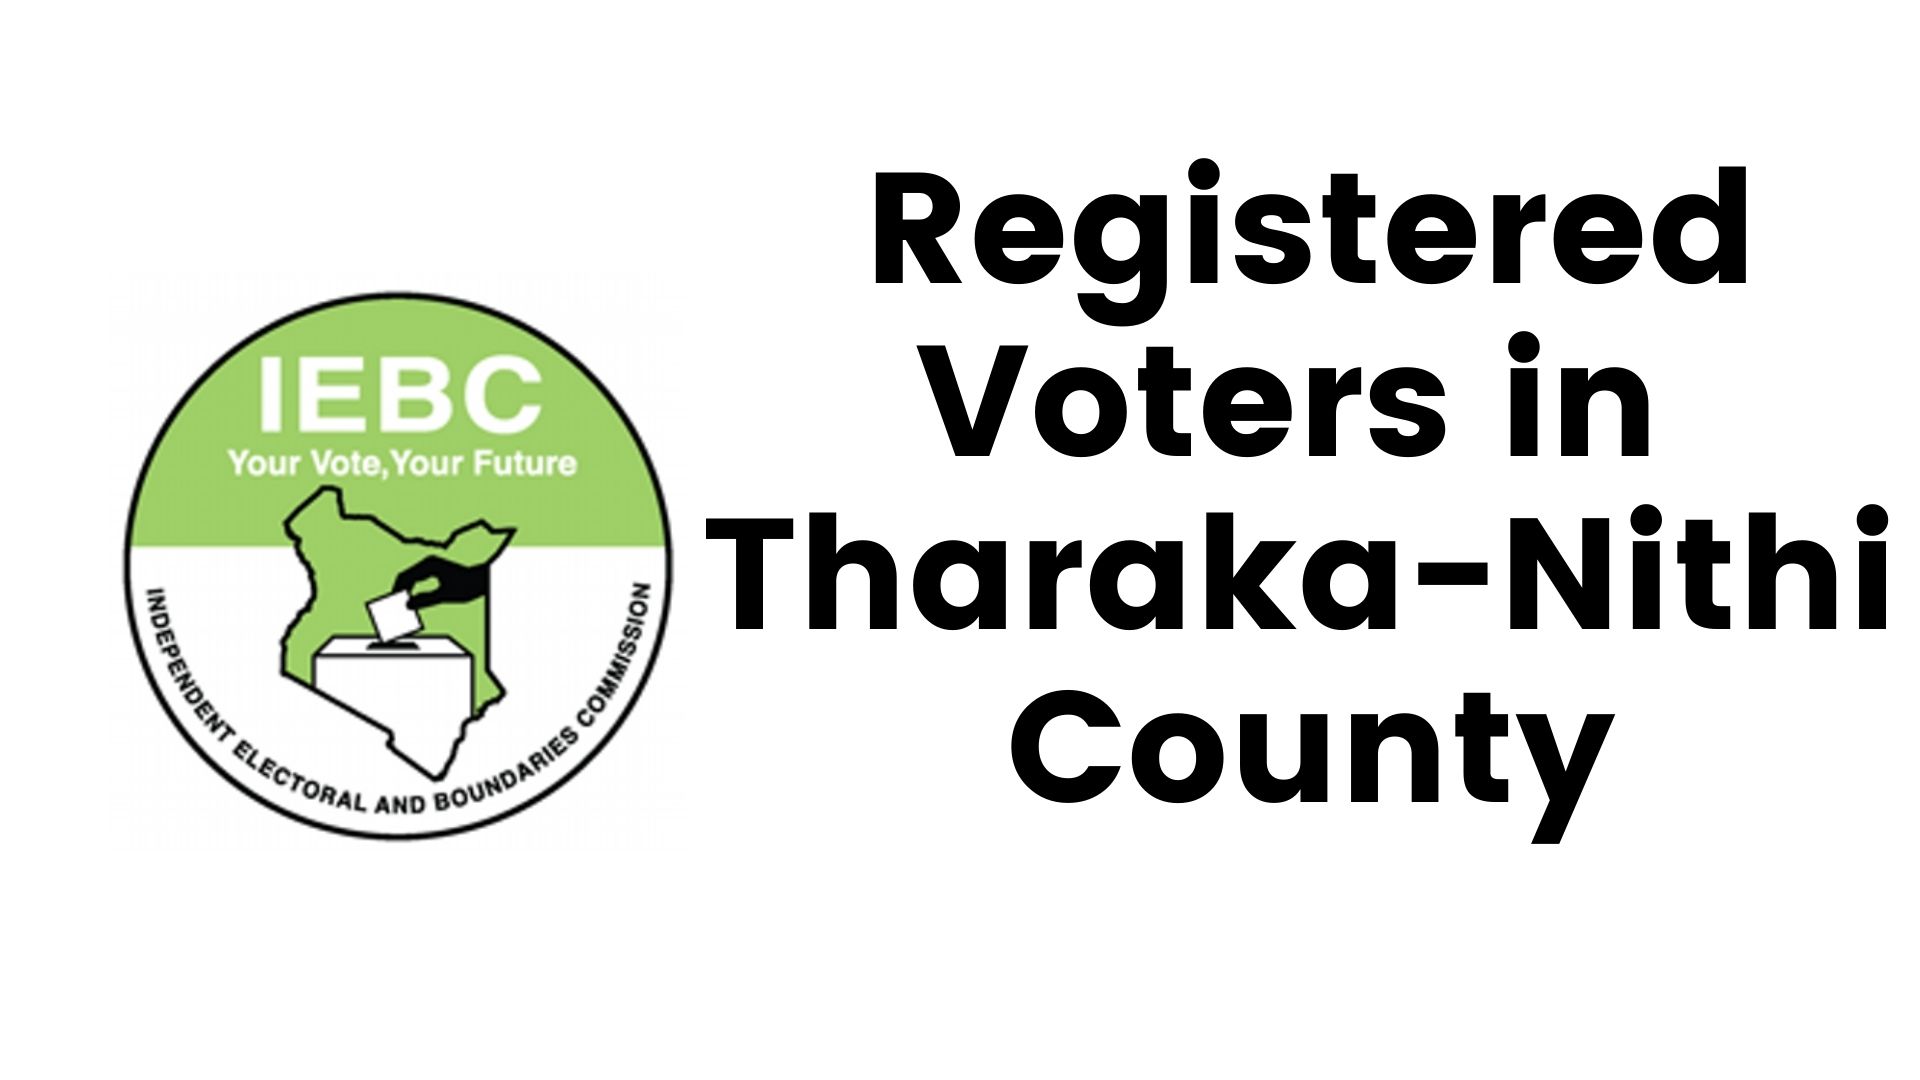 IEBC Tharaka-Nithi County Registered Voters